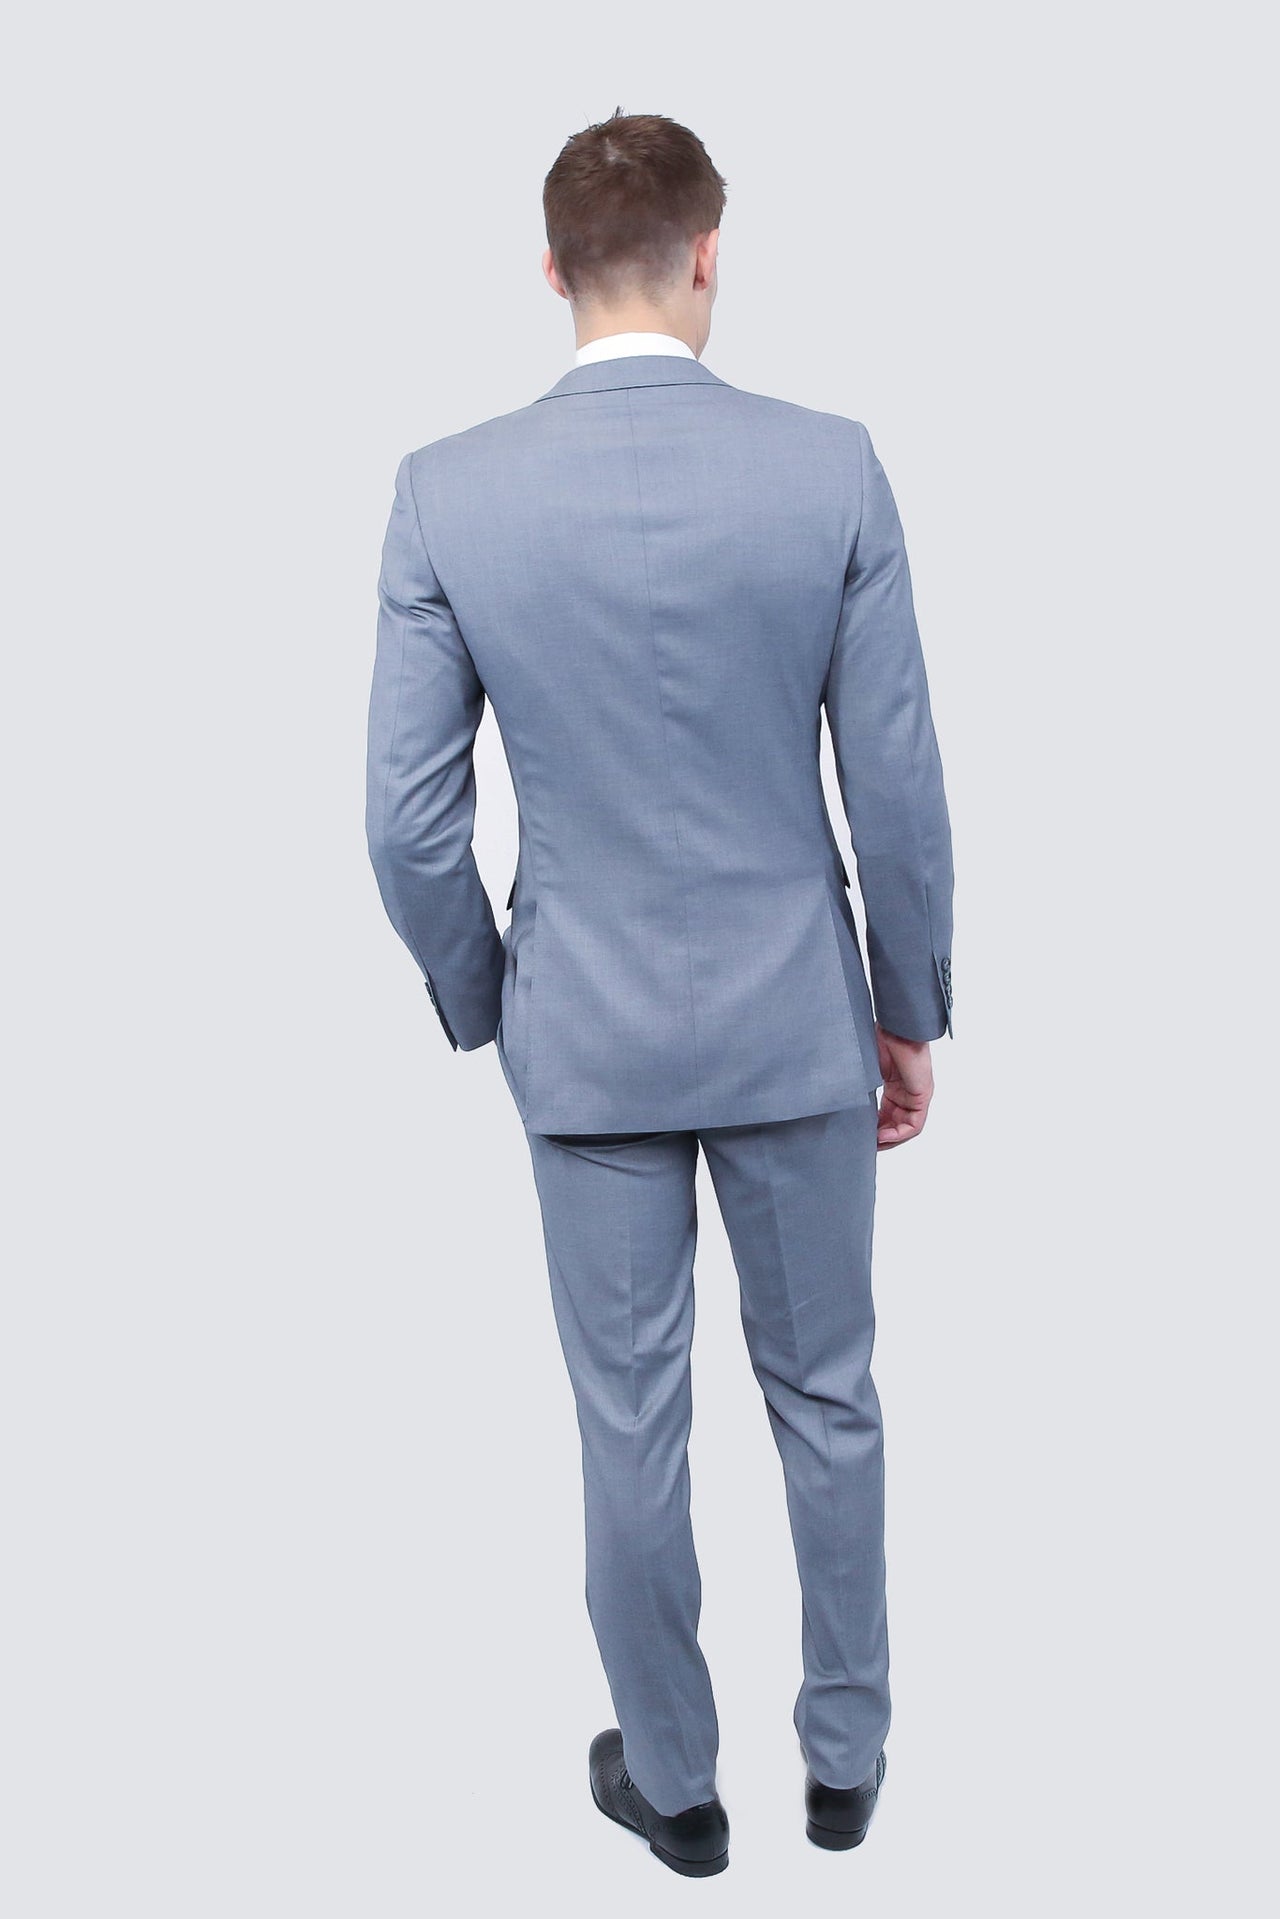 Tailor's Stretch Blend Suit | Shark Grey Modern or Slim Fit - Tomasso Black